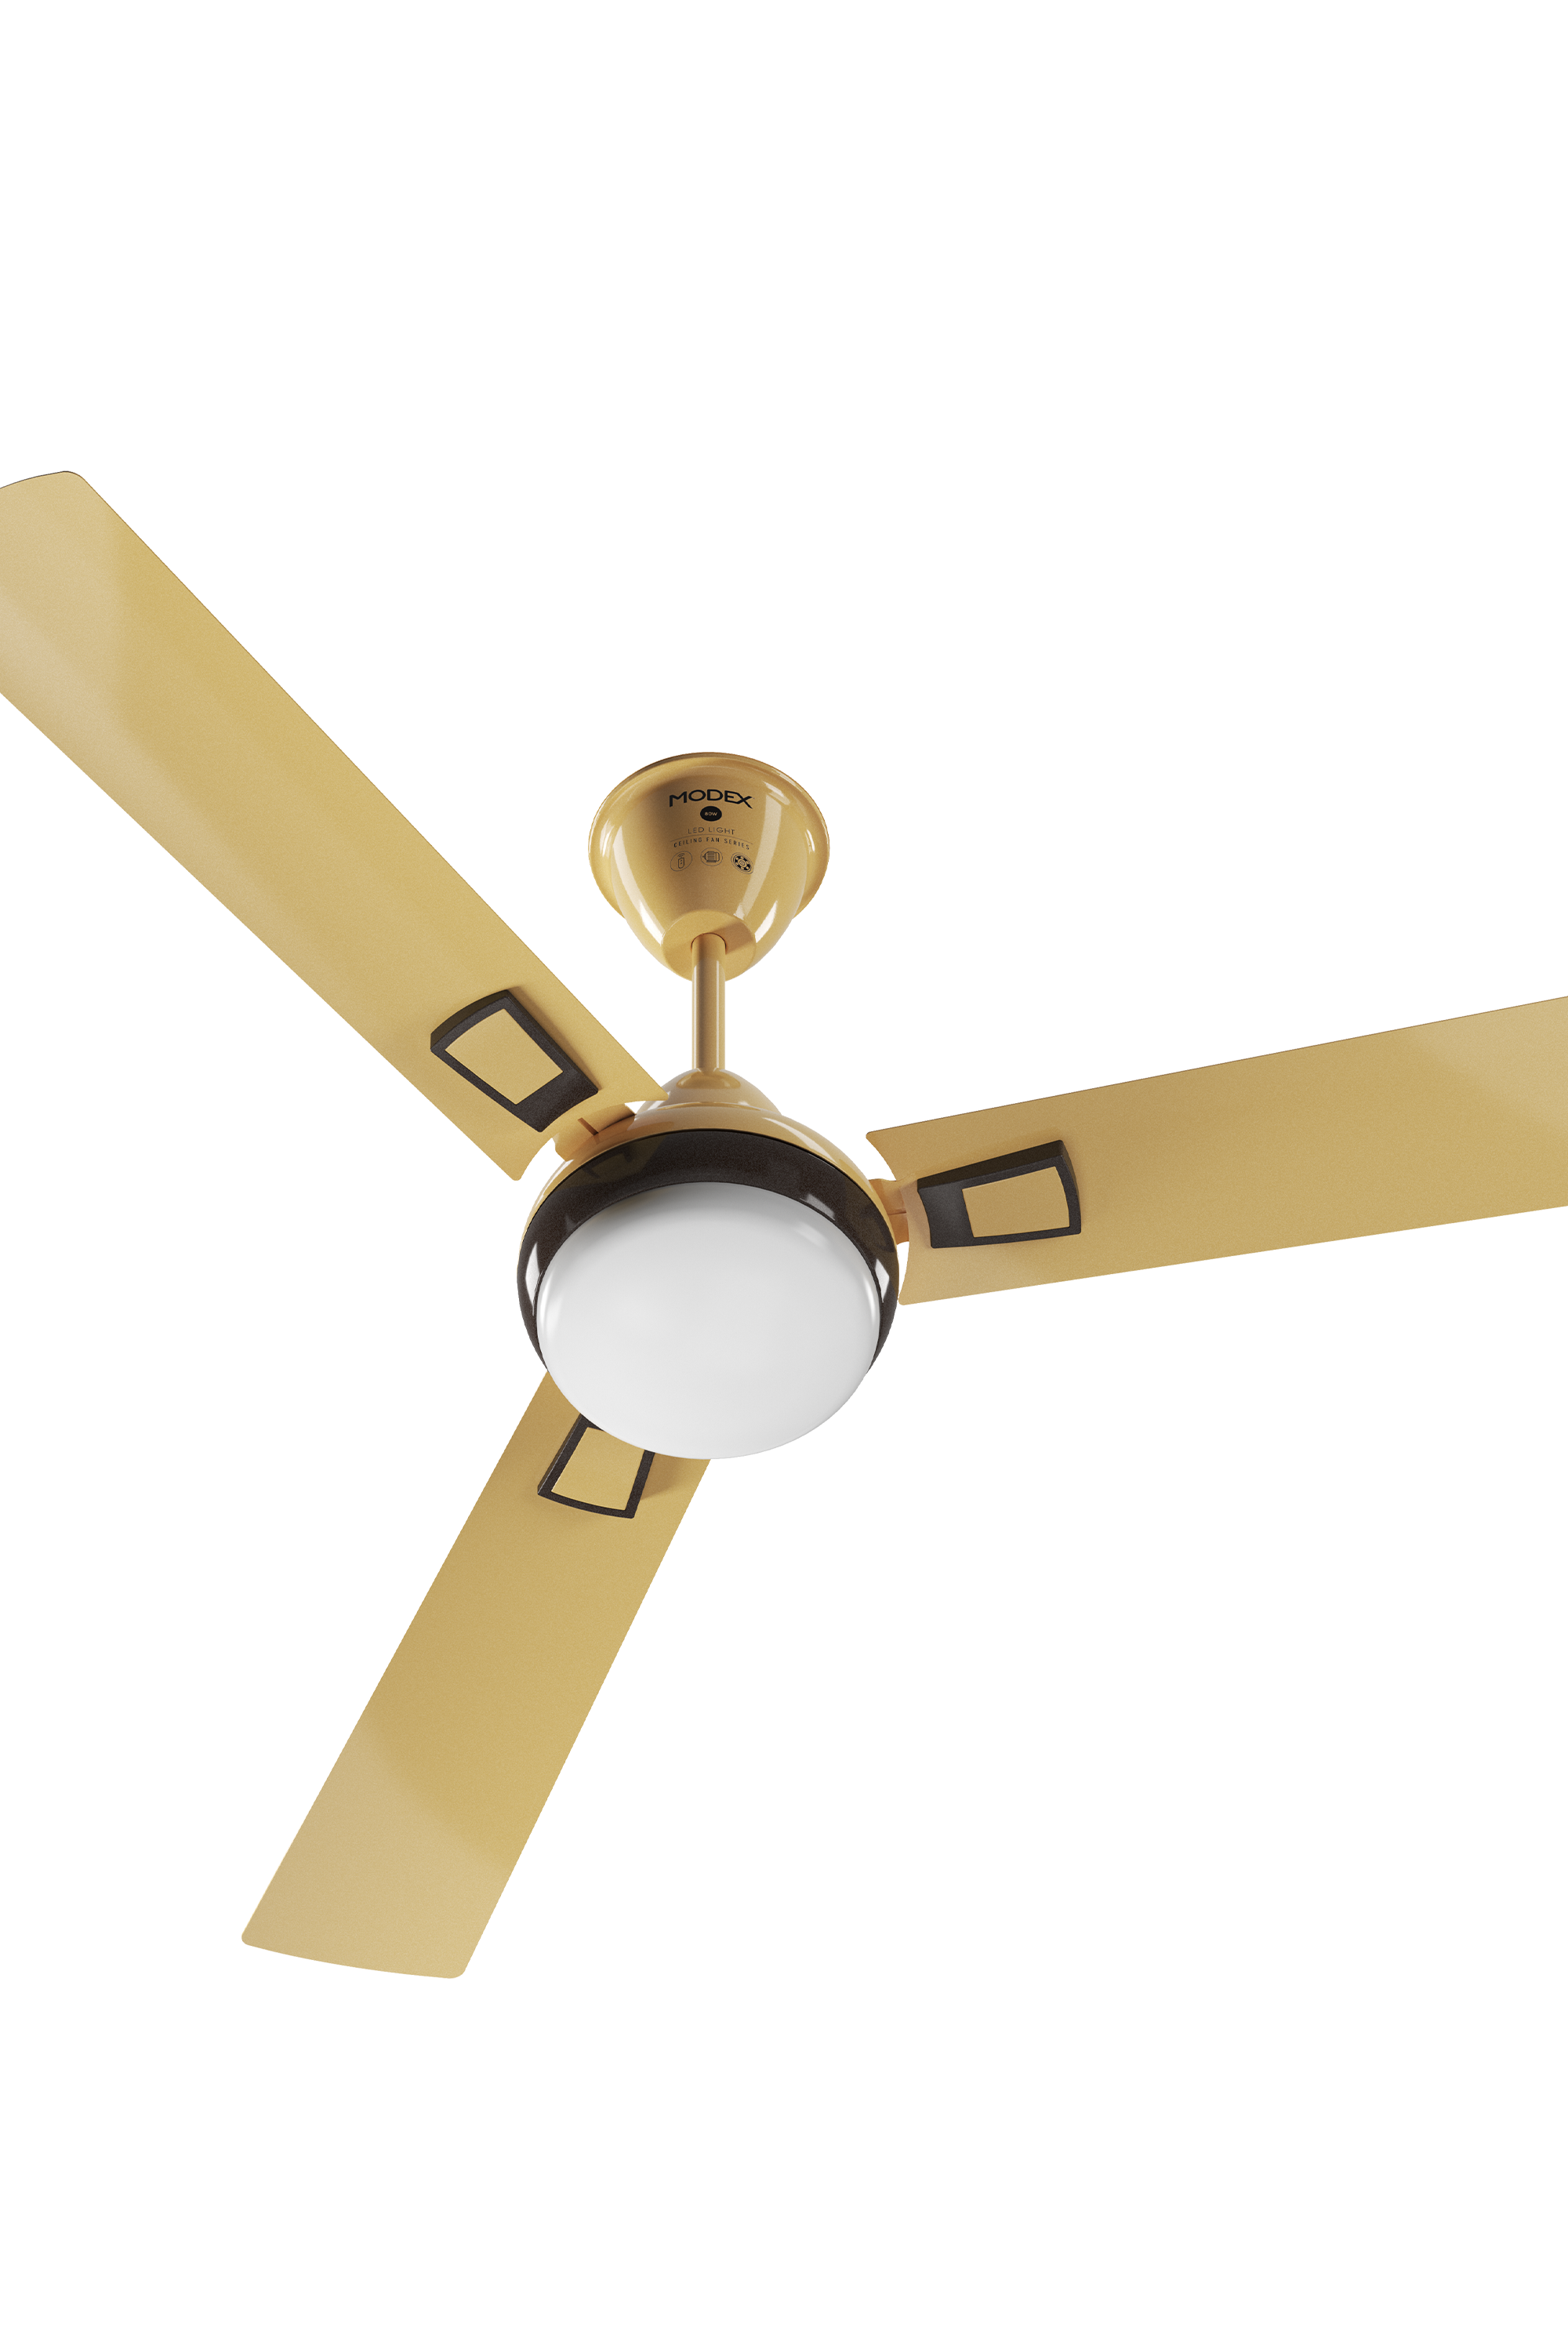 Cf5710 Ceiling Fan